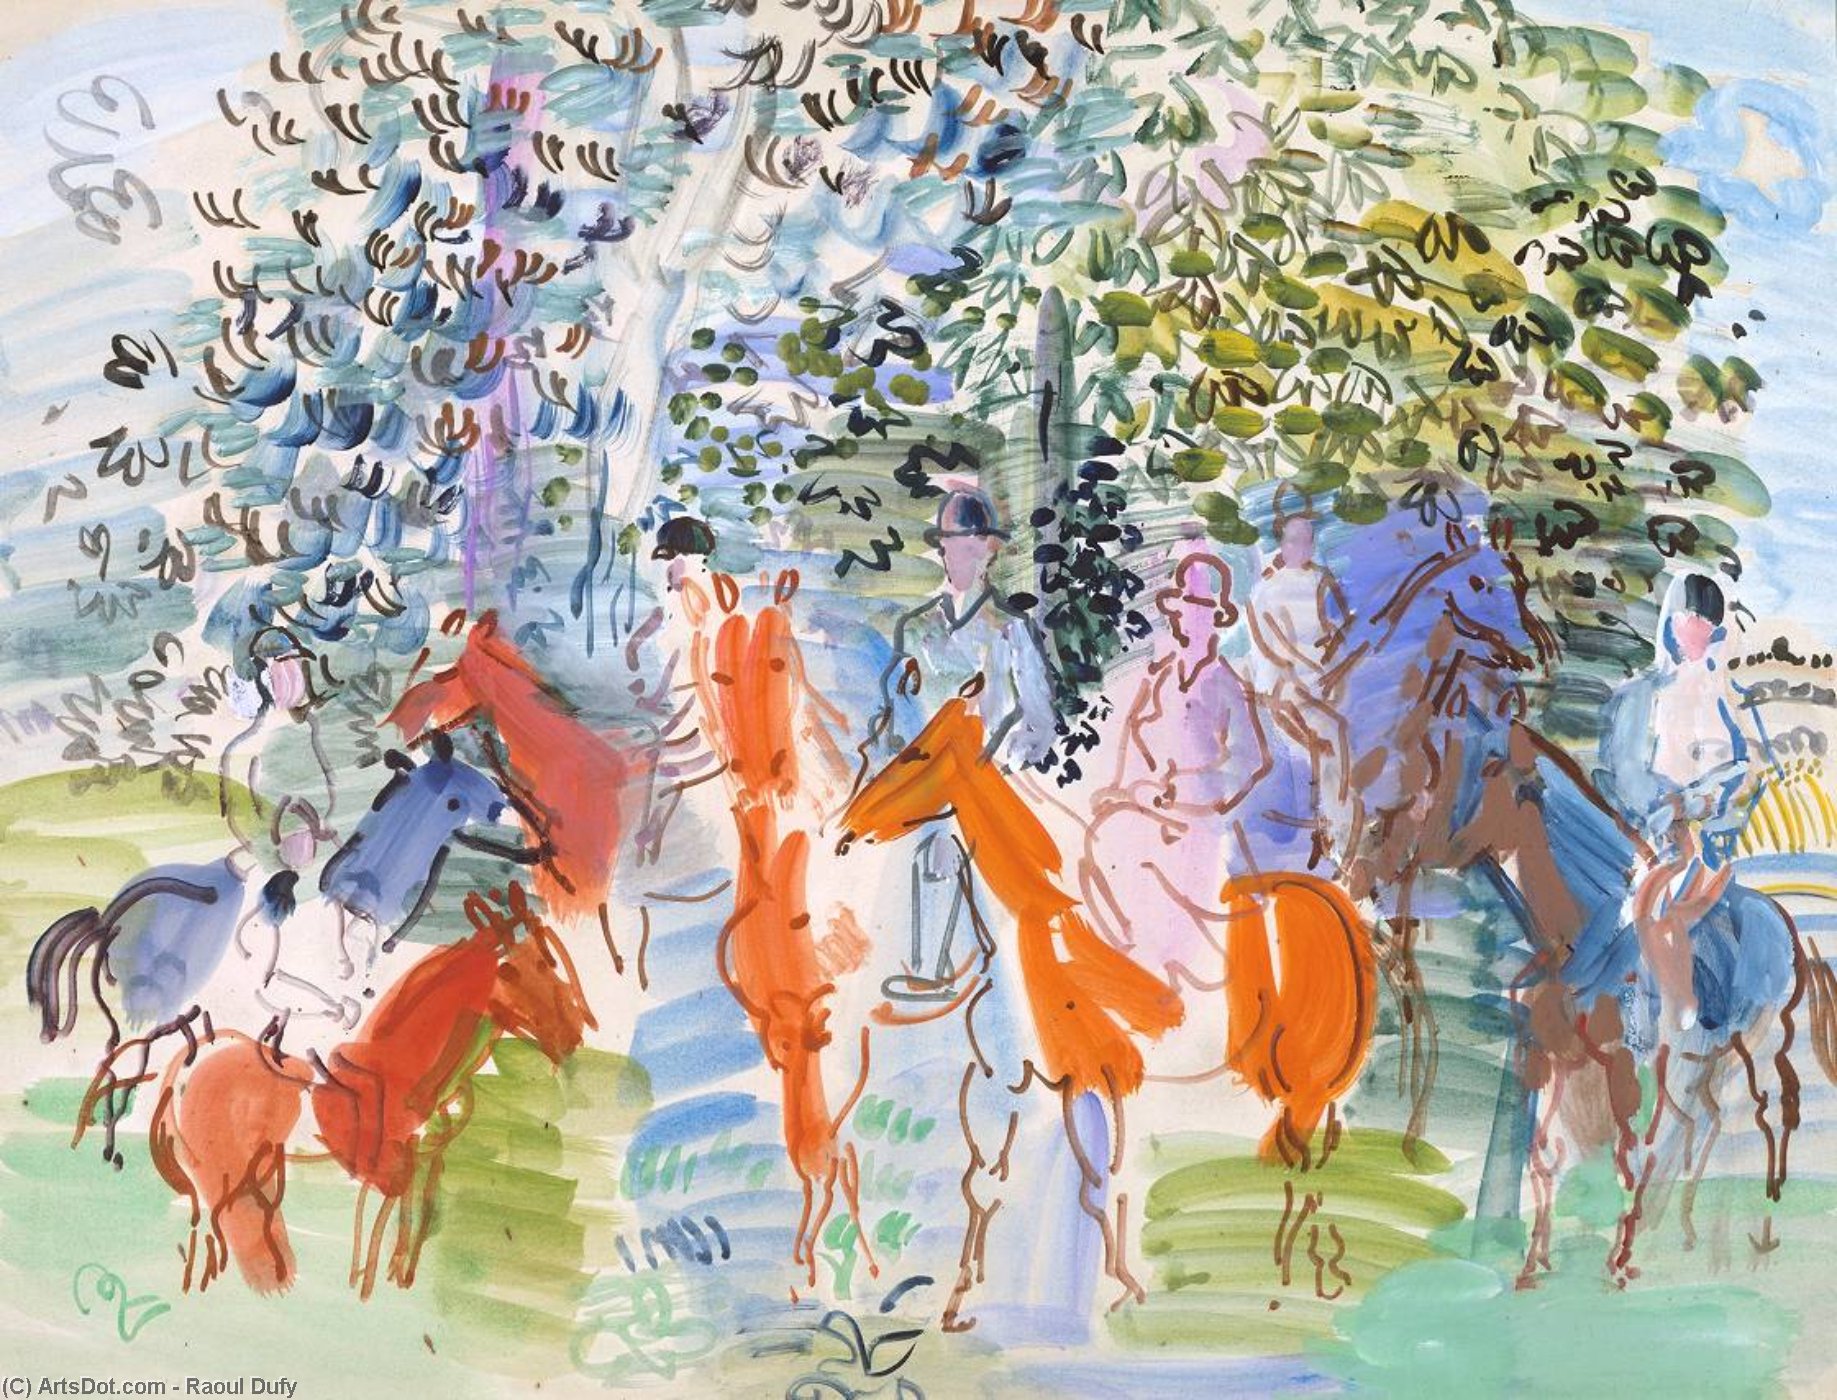 WikiOO.org - Encyclopedia of Fine Arts - Lukisan, Artwork Raoul Dufy - The Kessler Family on Horseback